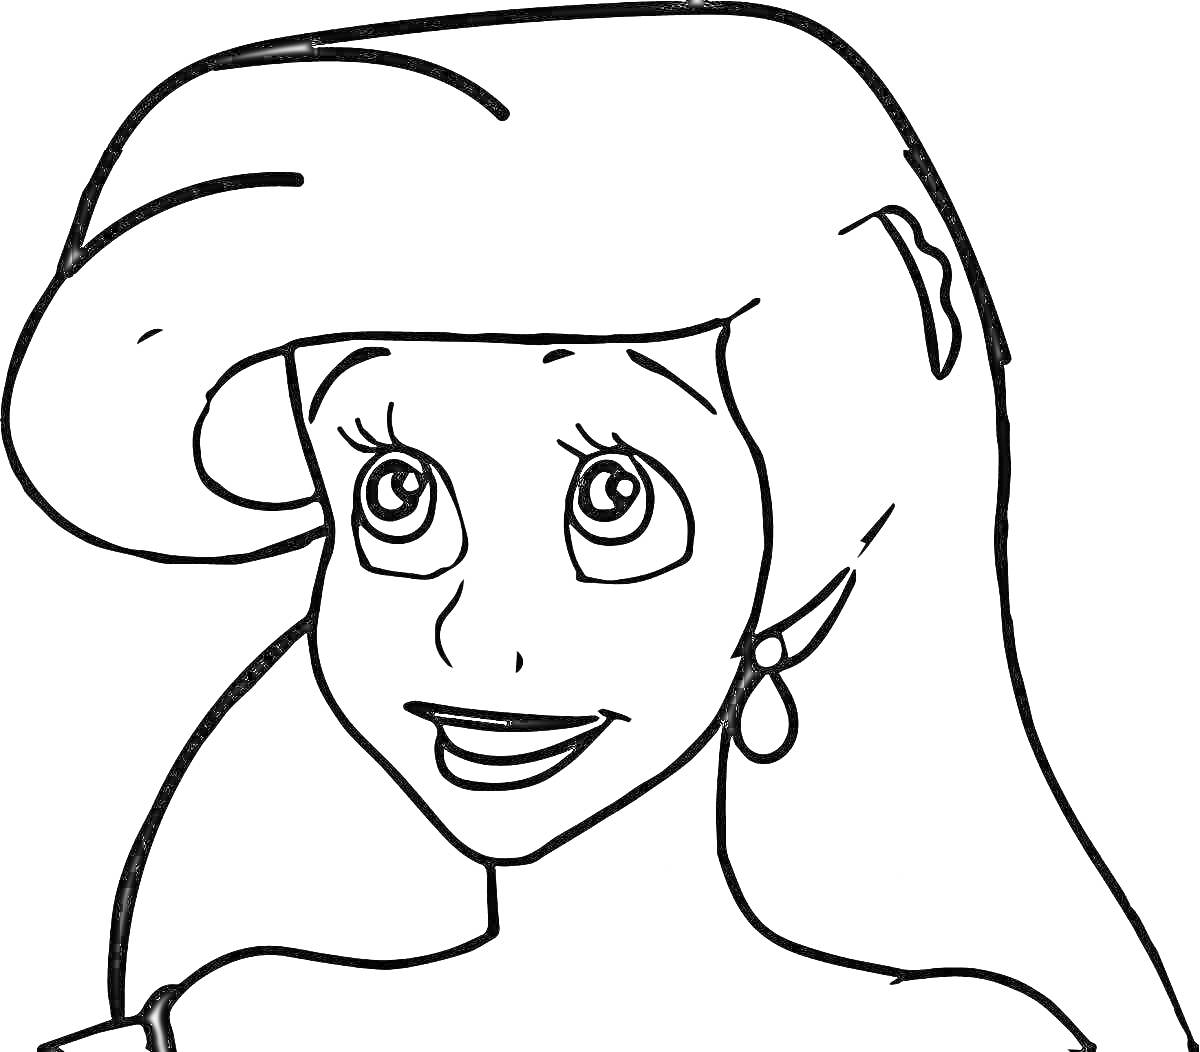 Раскраска Рисунок девушки с длинными волосами и серьгой в ухе